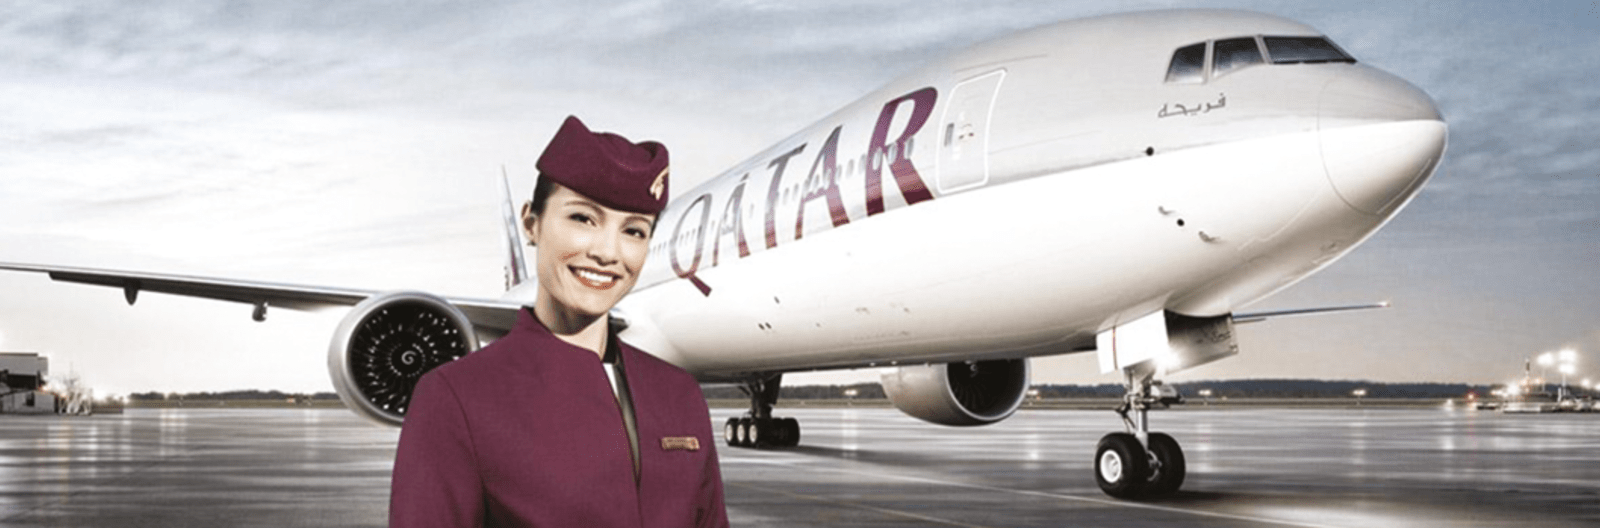 qatar_airways